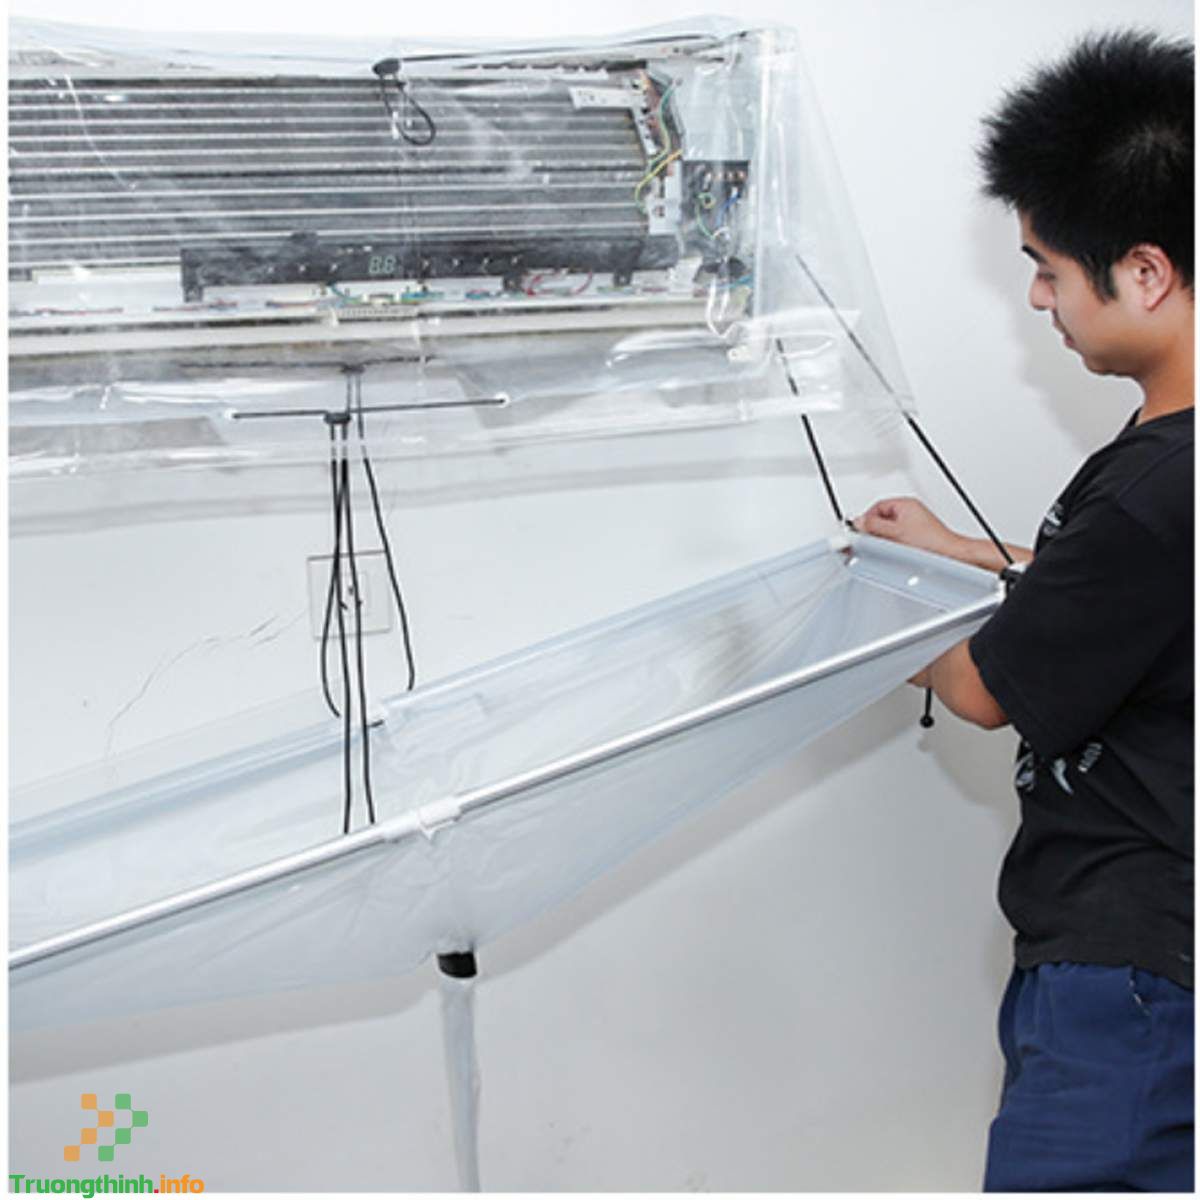 Sửa Máy Lạnh Bị Chảy Nước Tại Quận Phú Nhuận